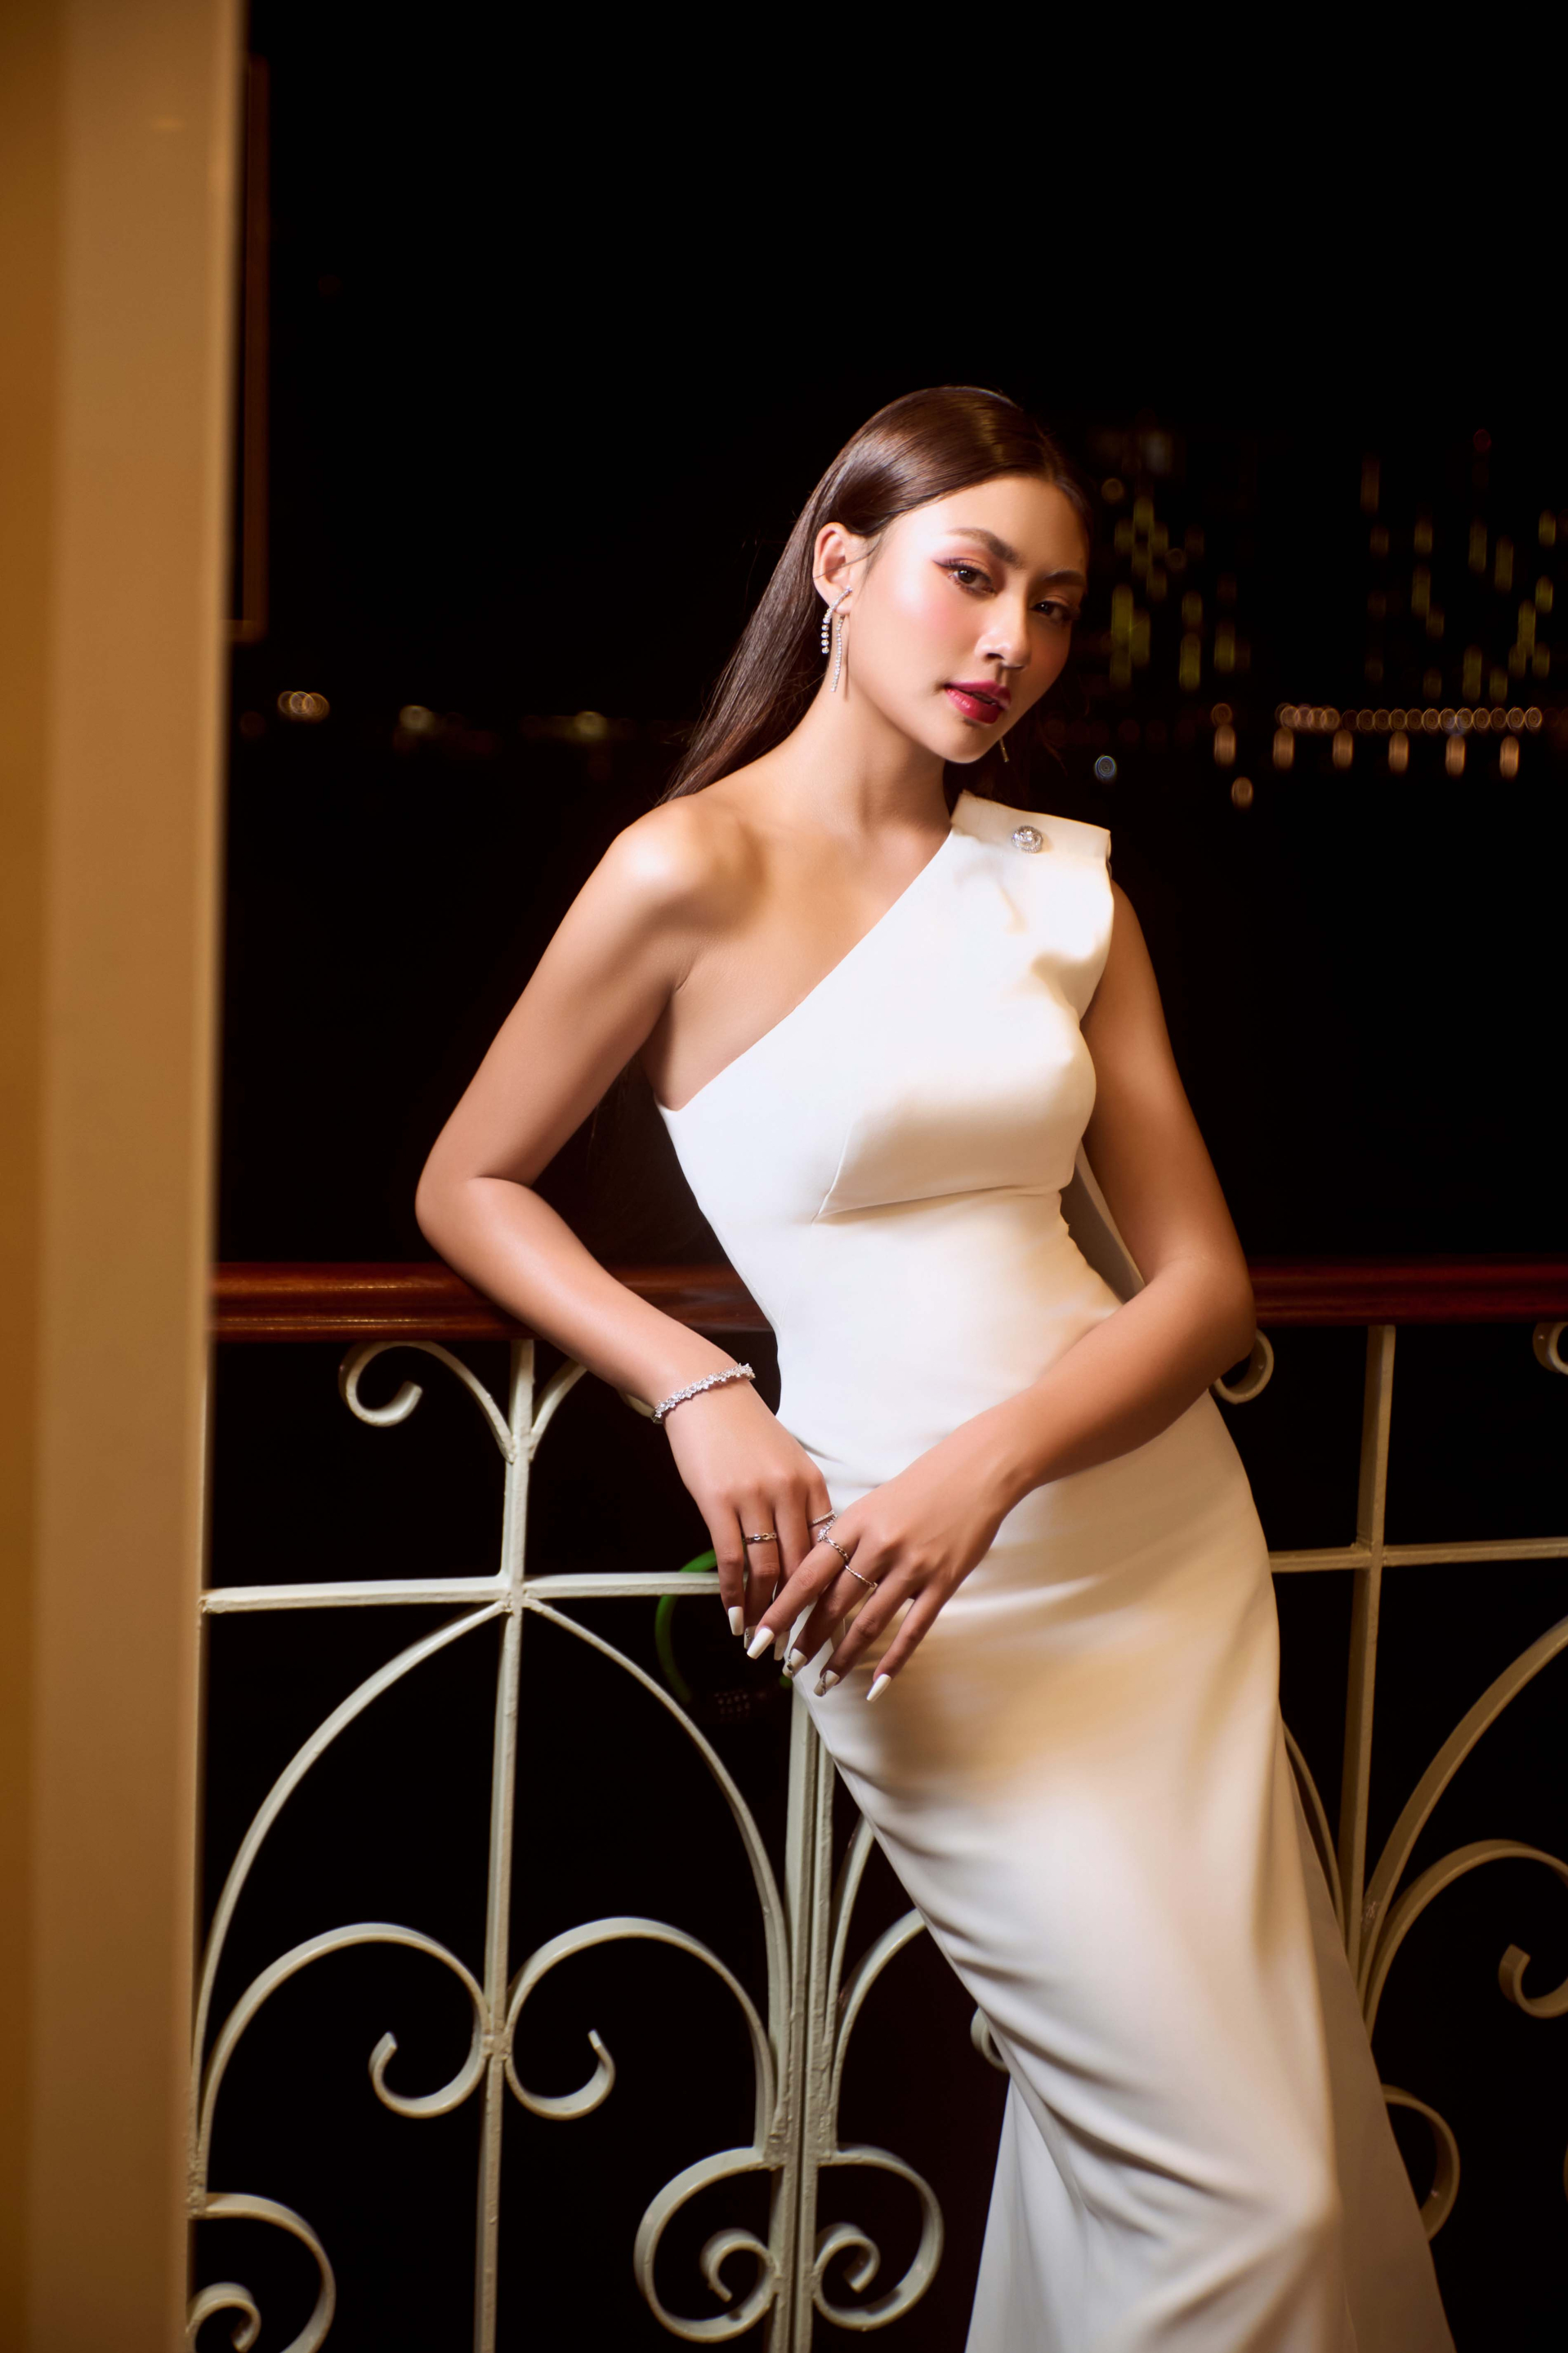 Hoa hậu Bùi Xuân Hạnh: 'Tôi đặt báo thức để nhớ uống đủ nước mỗi ngày' - ảnh 1